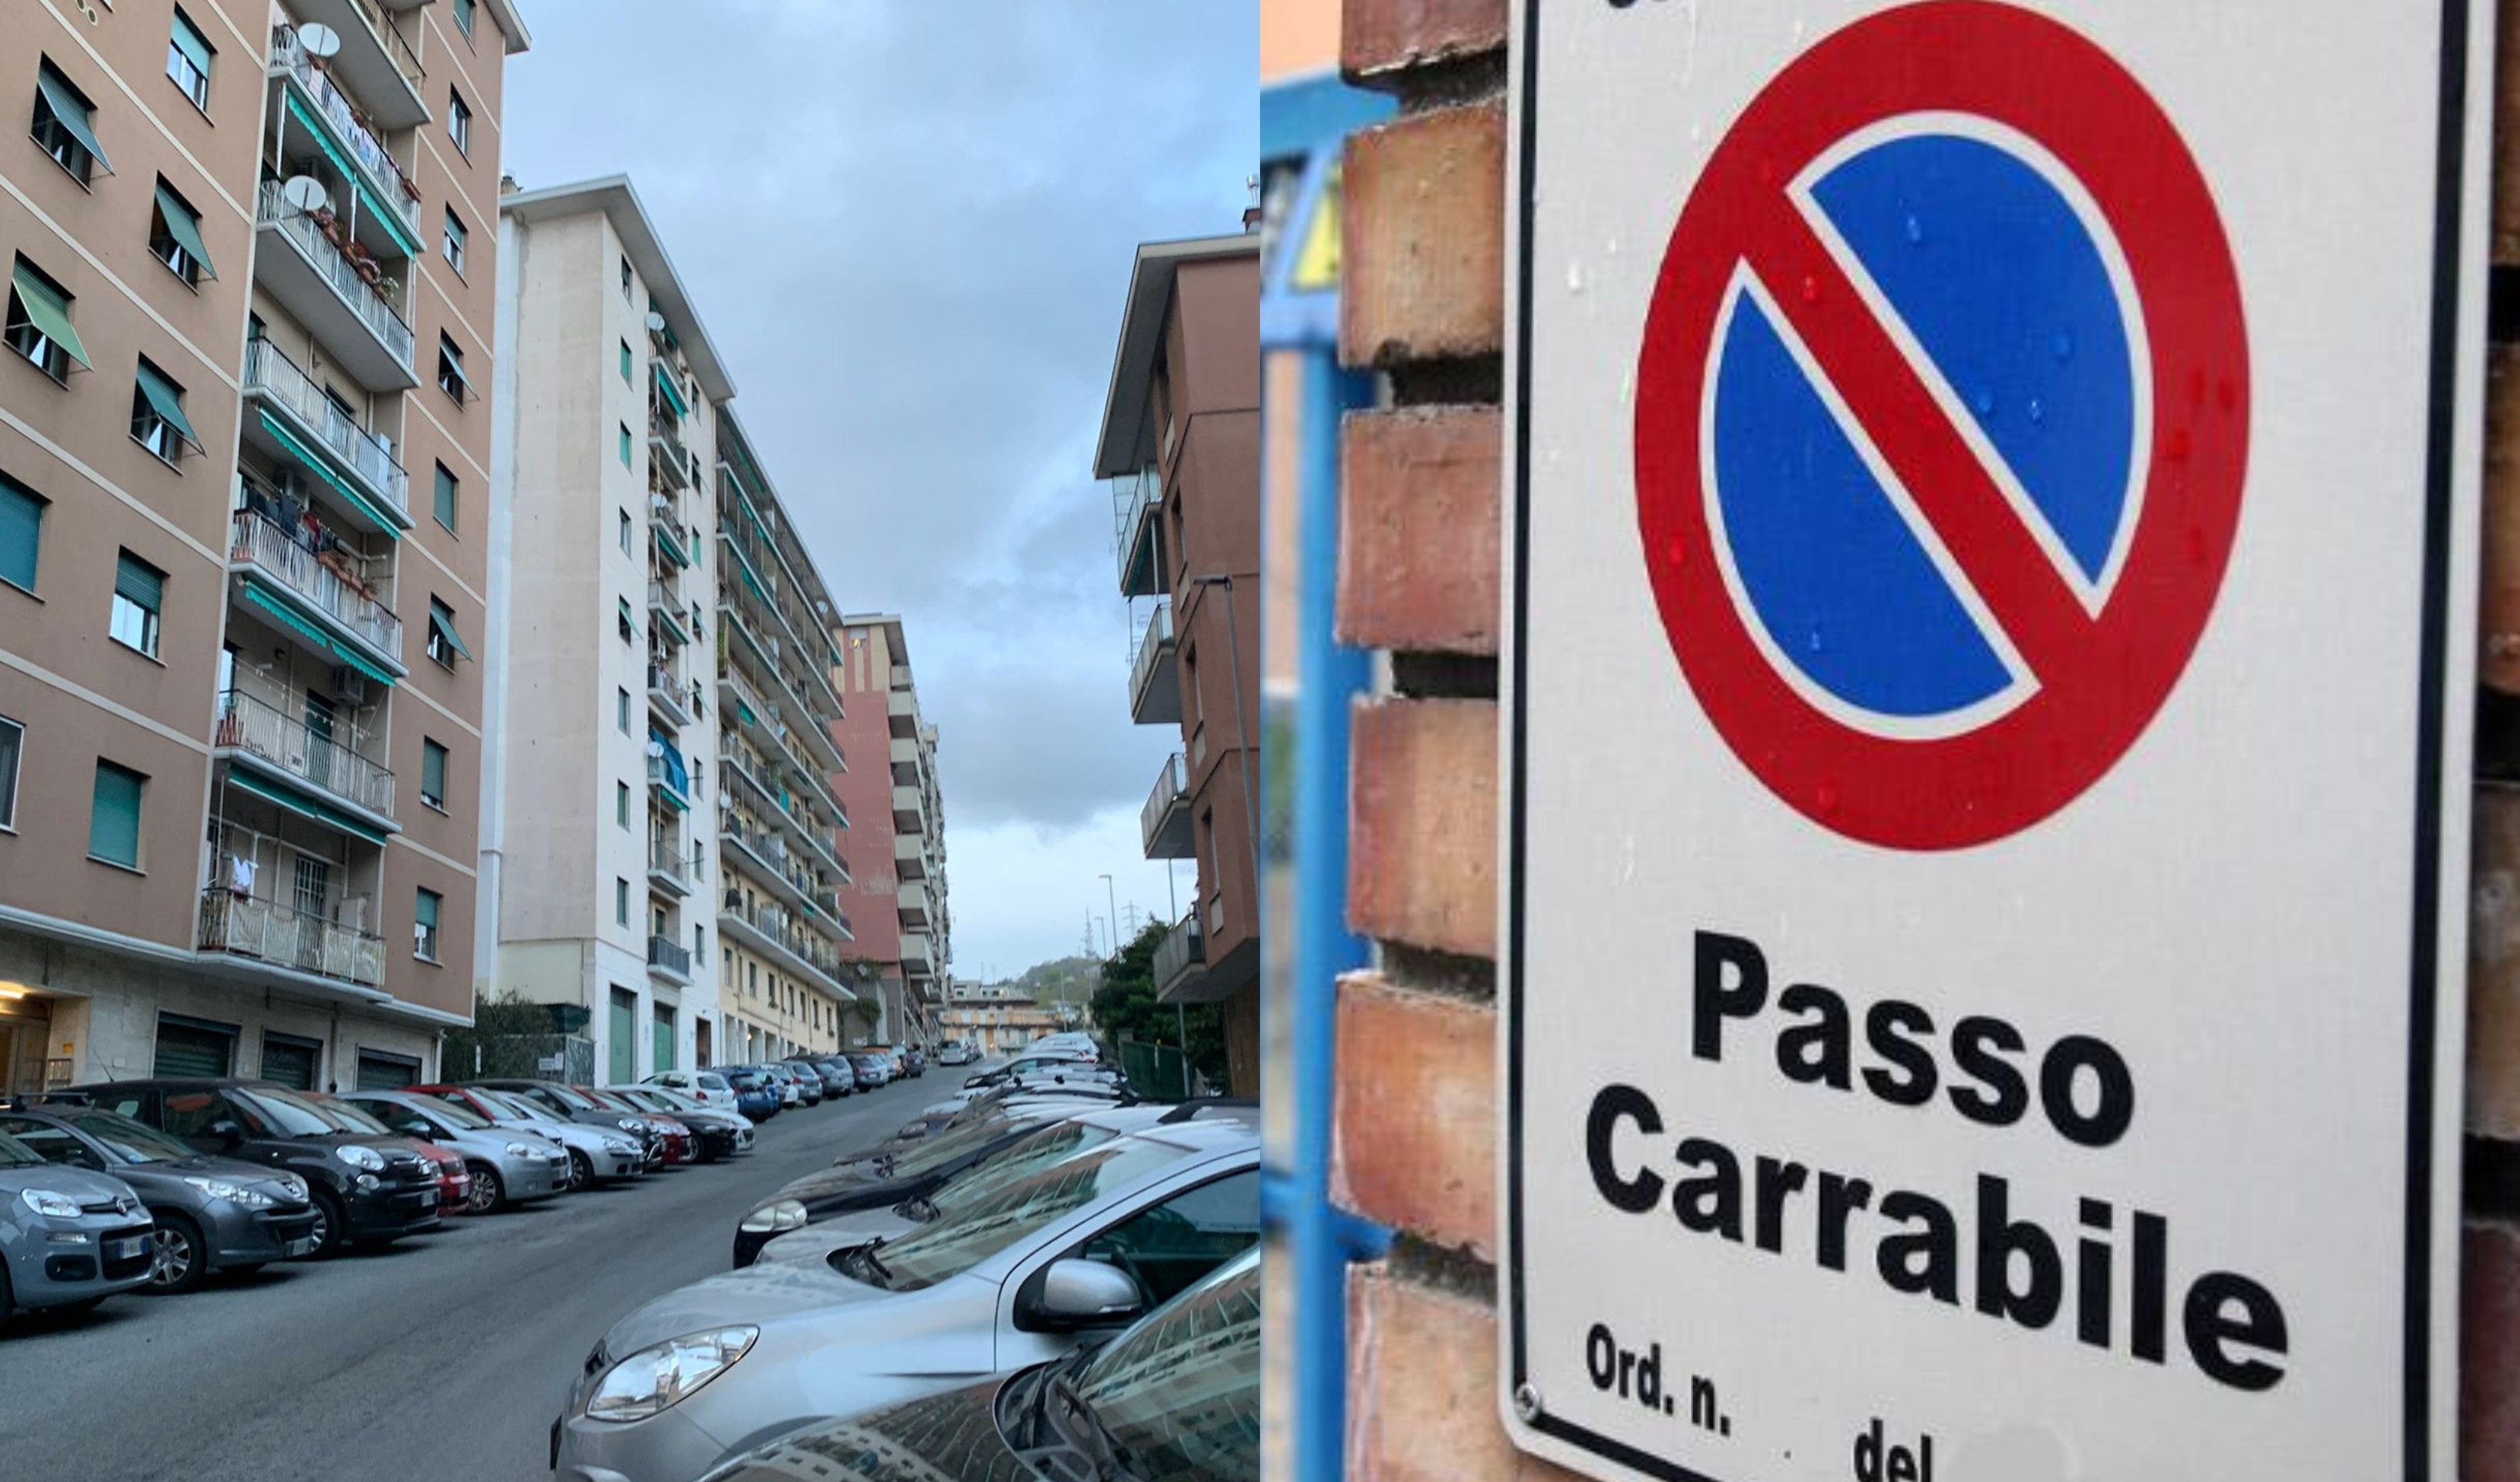 Genova, boom di passi carrabili e pochi parcheggi, spunta la petizione dei residenti